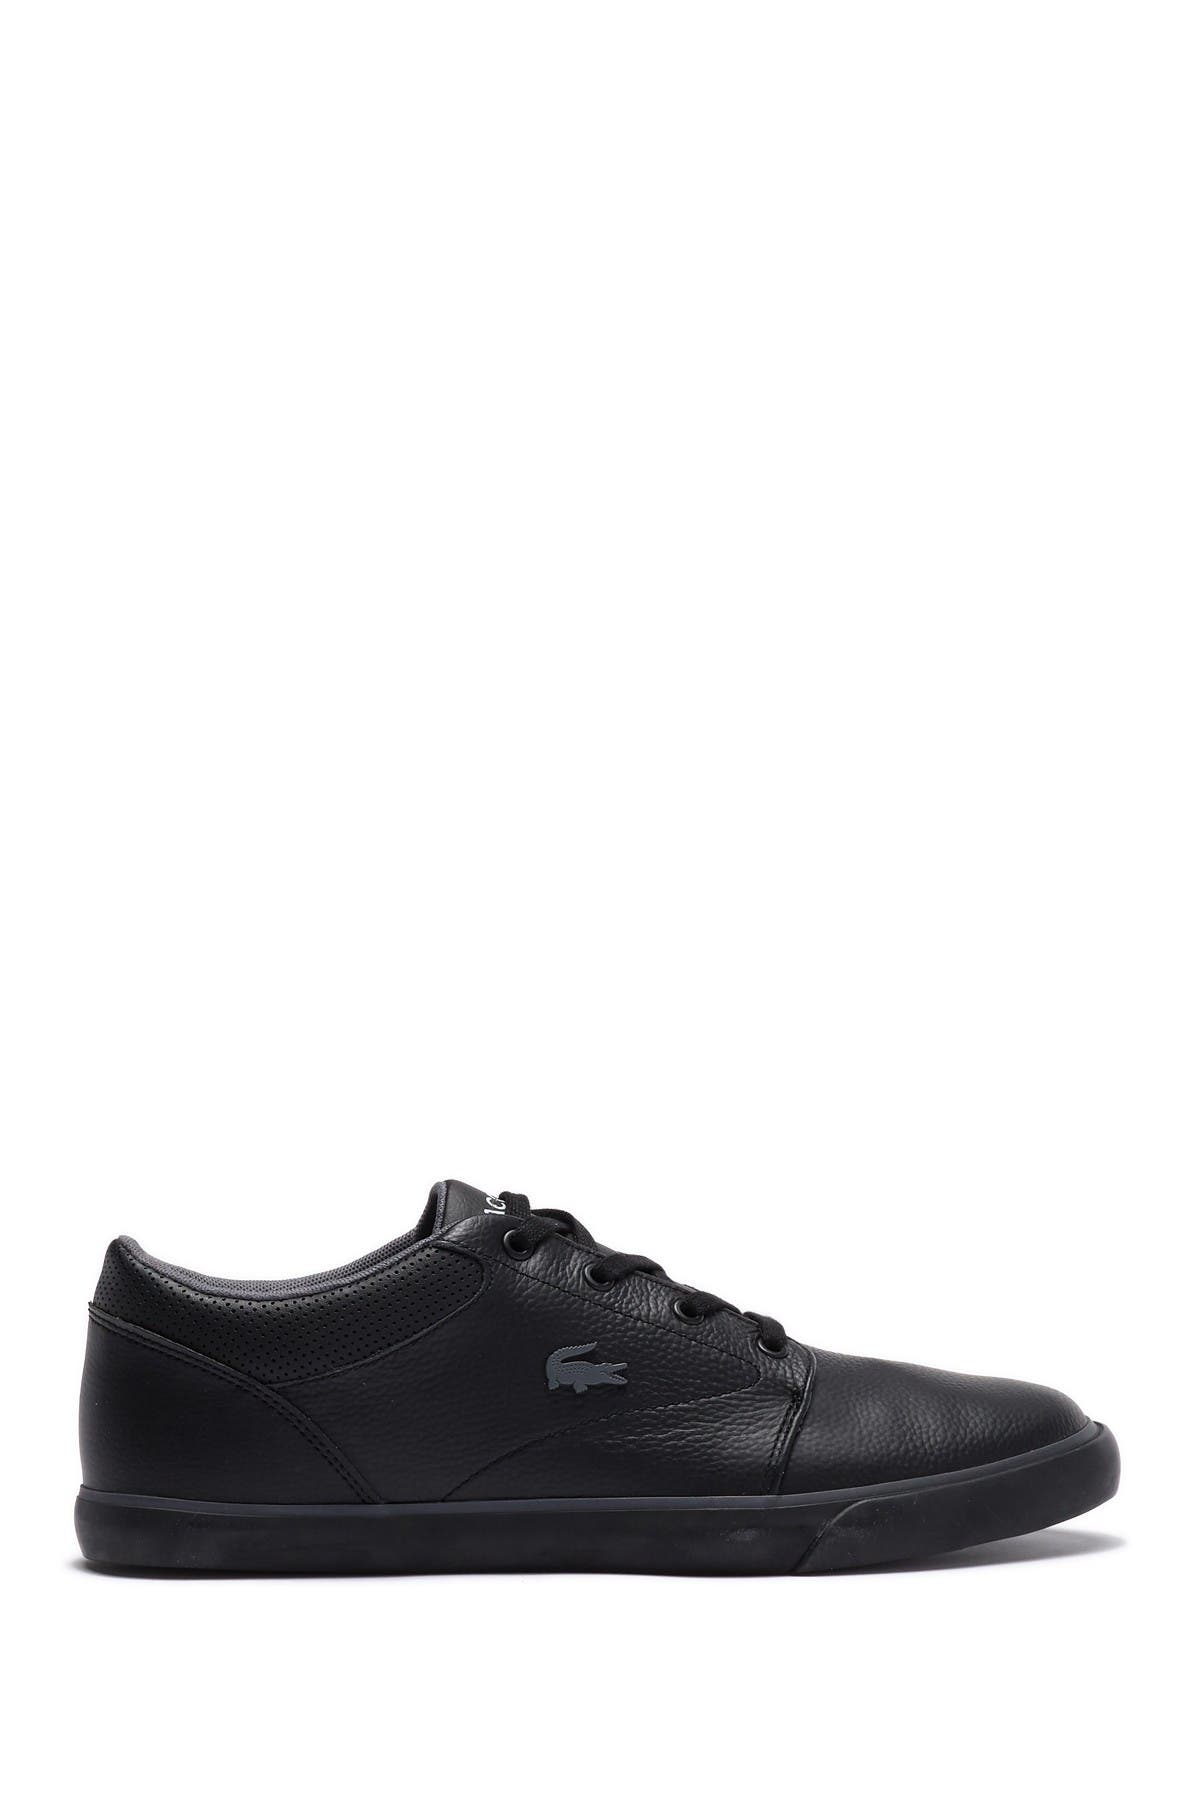 Lacoste | Minzah 119 Leather Sneaker 